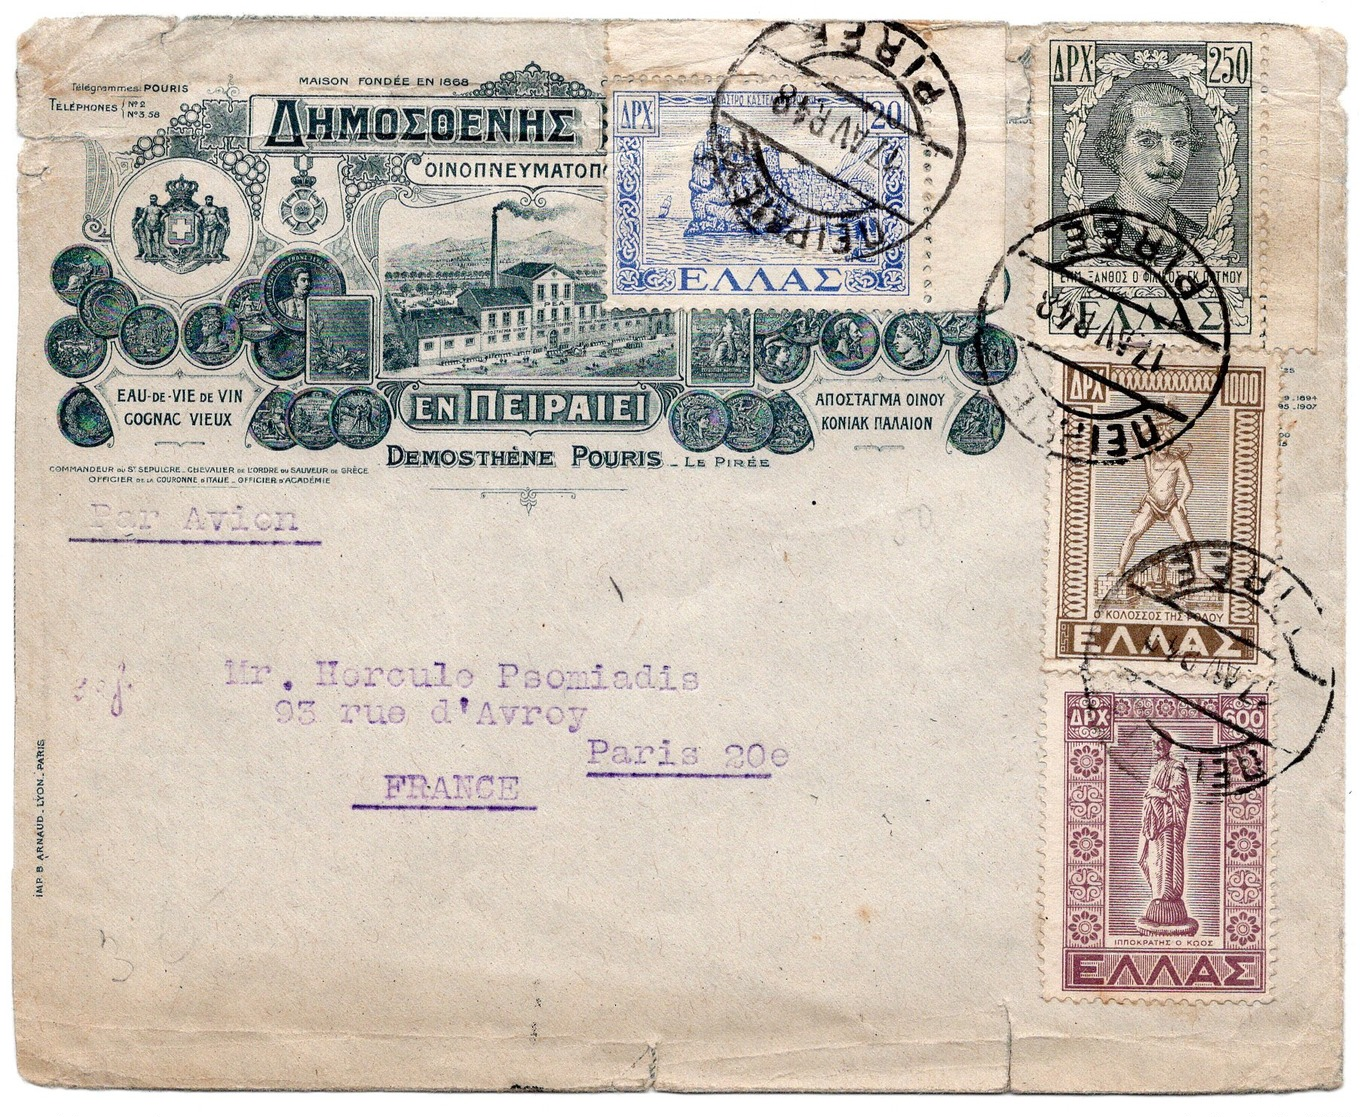 LSC 1948 - Enveloppe Illustrée Eau De Vie De Vin - Cognac Vieux - Demosthène Pouris / Enveloppe Pour Paris & Timbres - Lettres & Documents